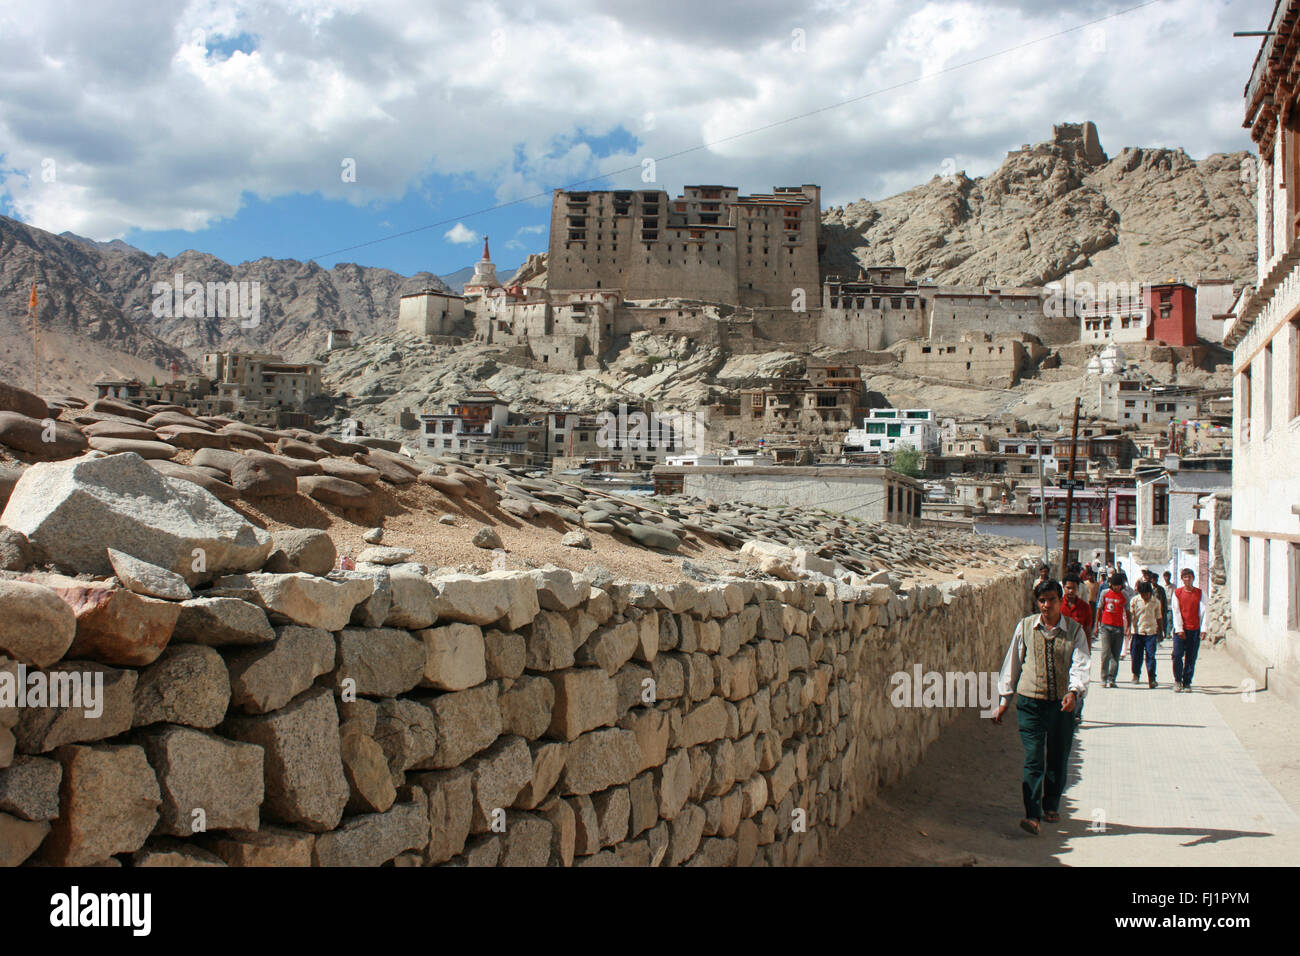 Parte vecchia di Leh, ladakh, India, con il fort di Leh sul retro Foto Stock